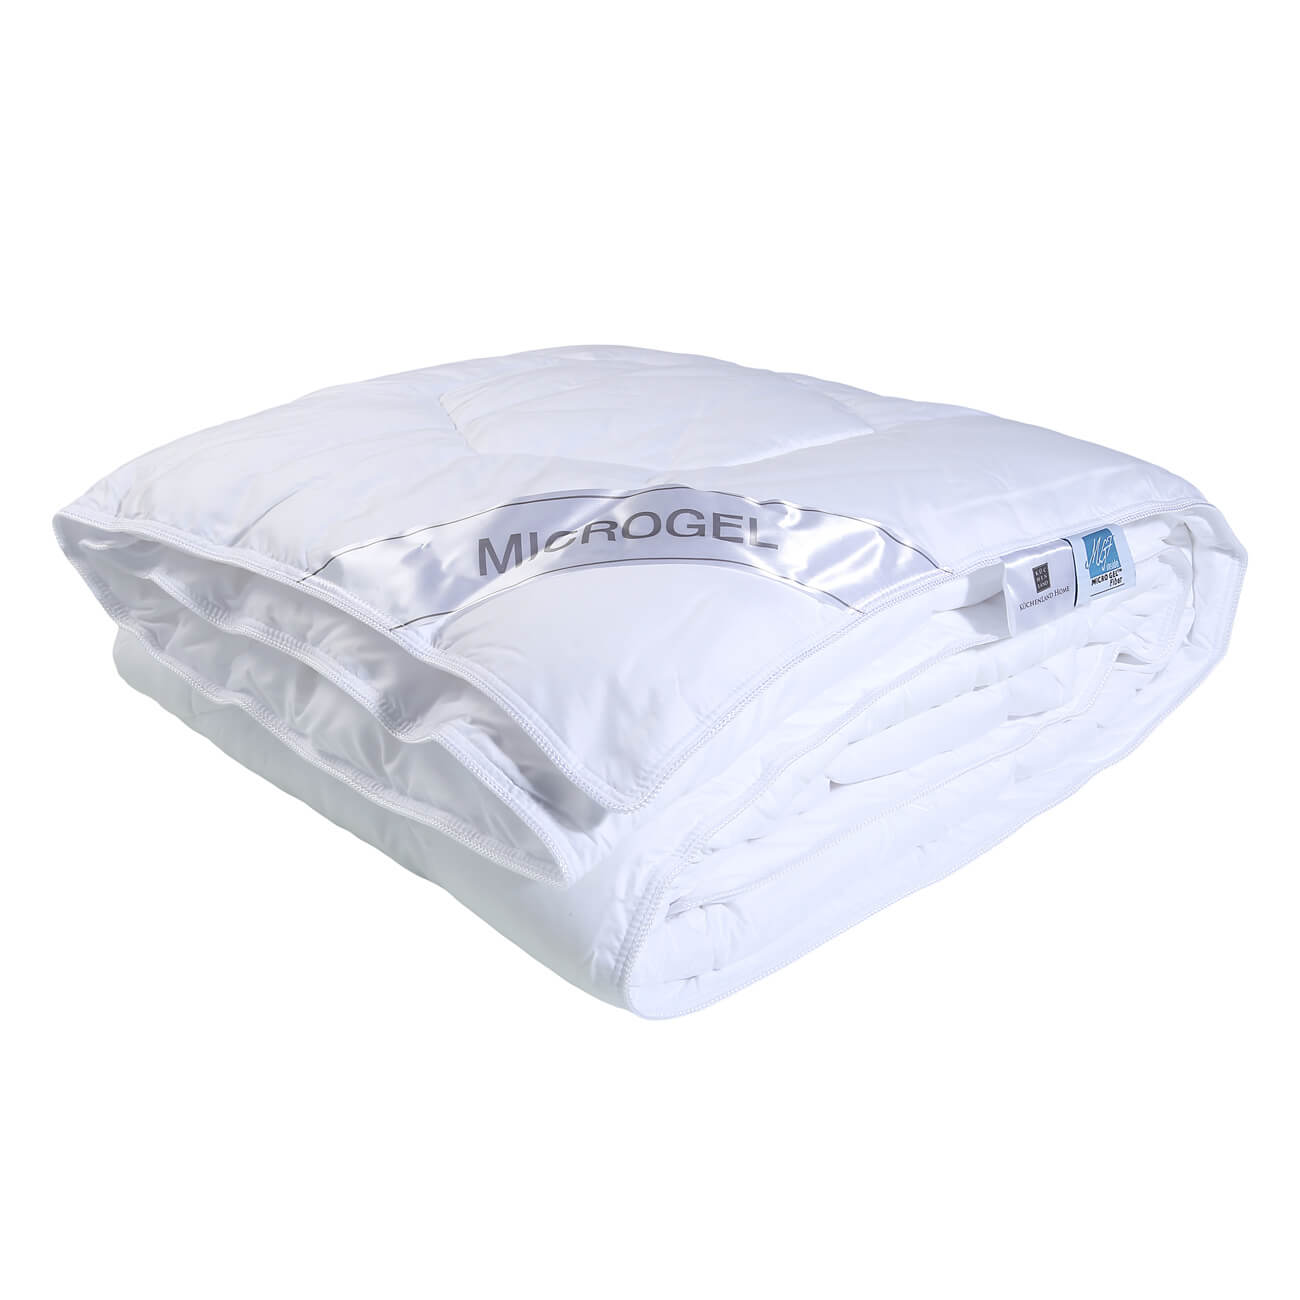 одеяло легкое 140x205 см файберсофт Одеяло, 140х200 см, микрофибра/микрогель, Microgel